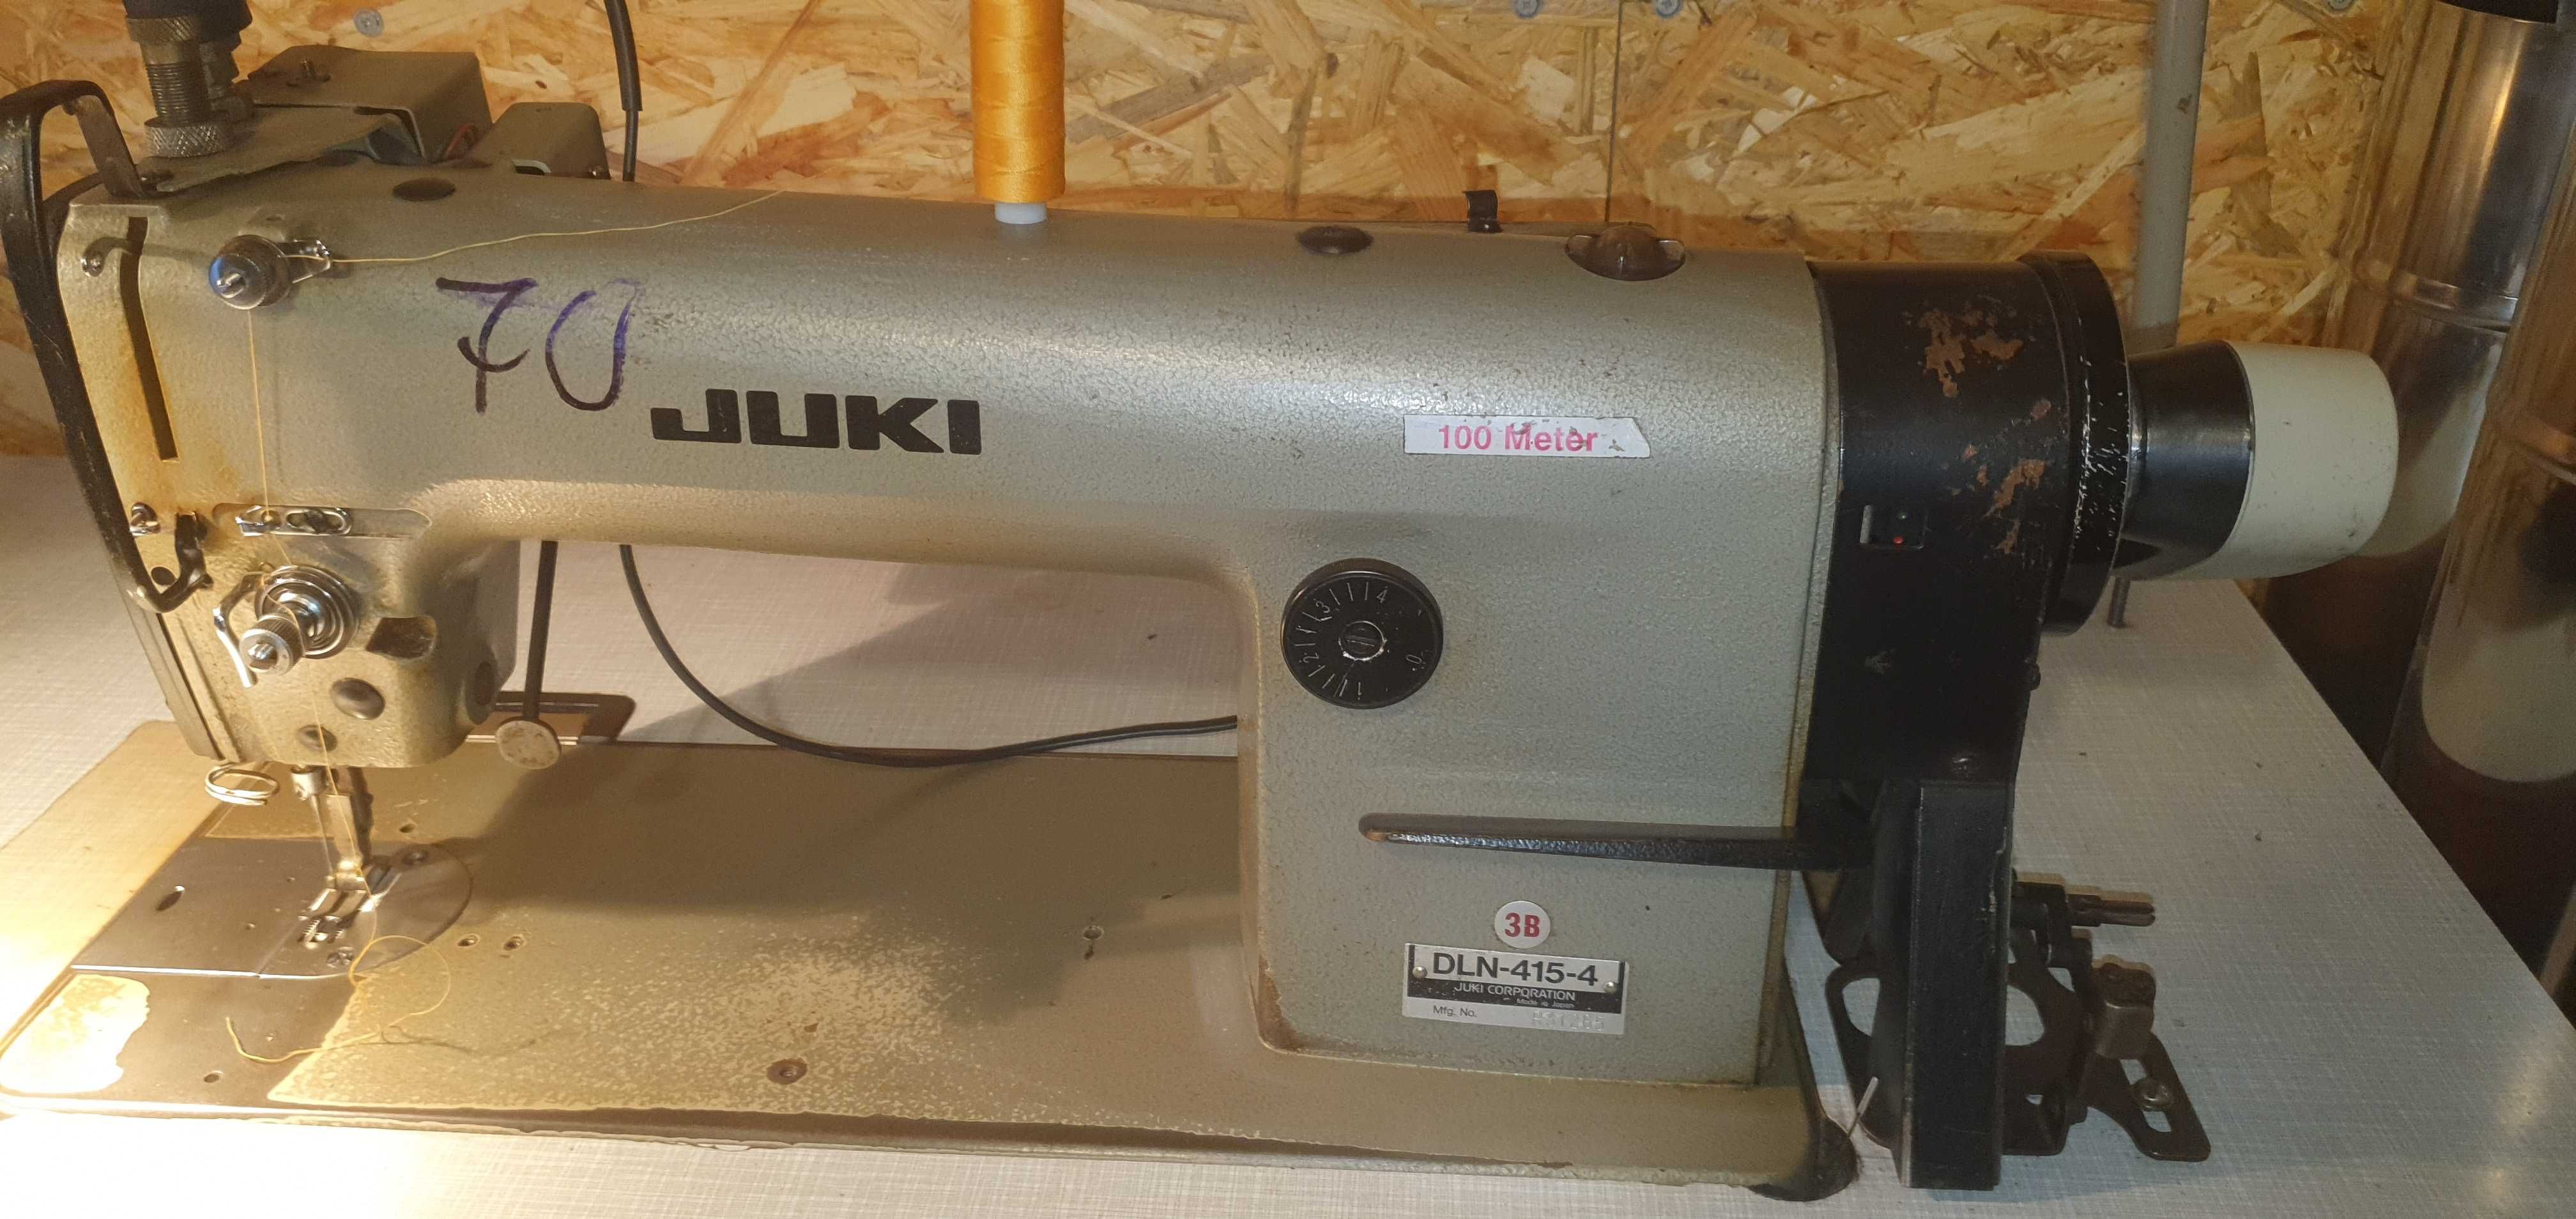 Maszyna do szycia Juki dln 415-4 po serwisie